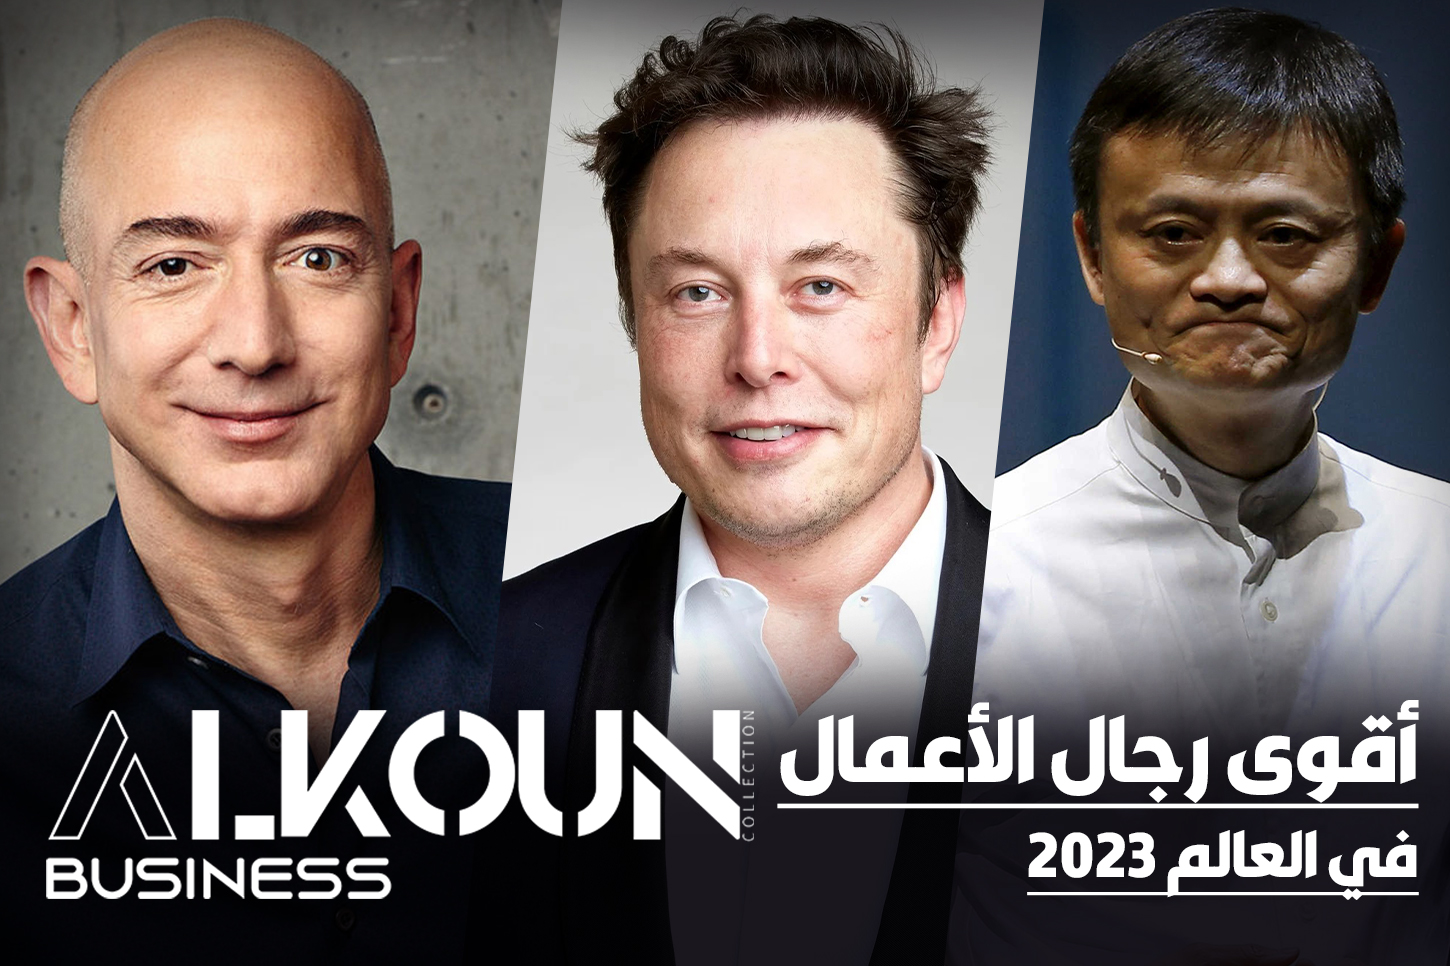 أقوى ثلاثة رجال أعمال في العالم 2023